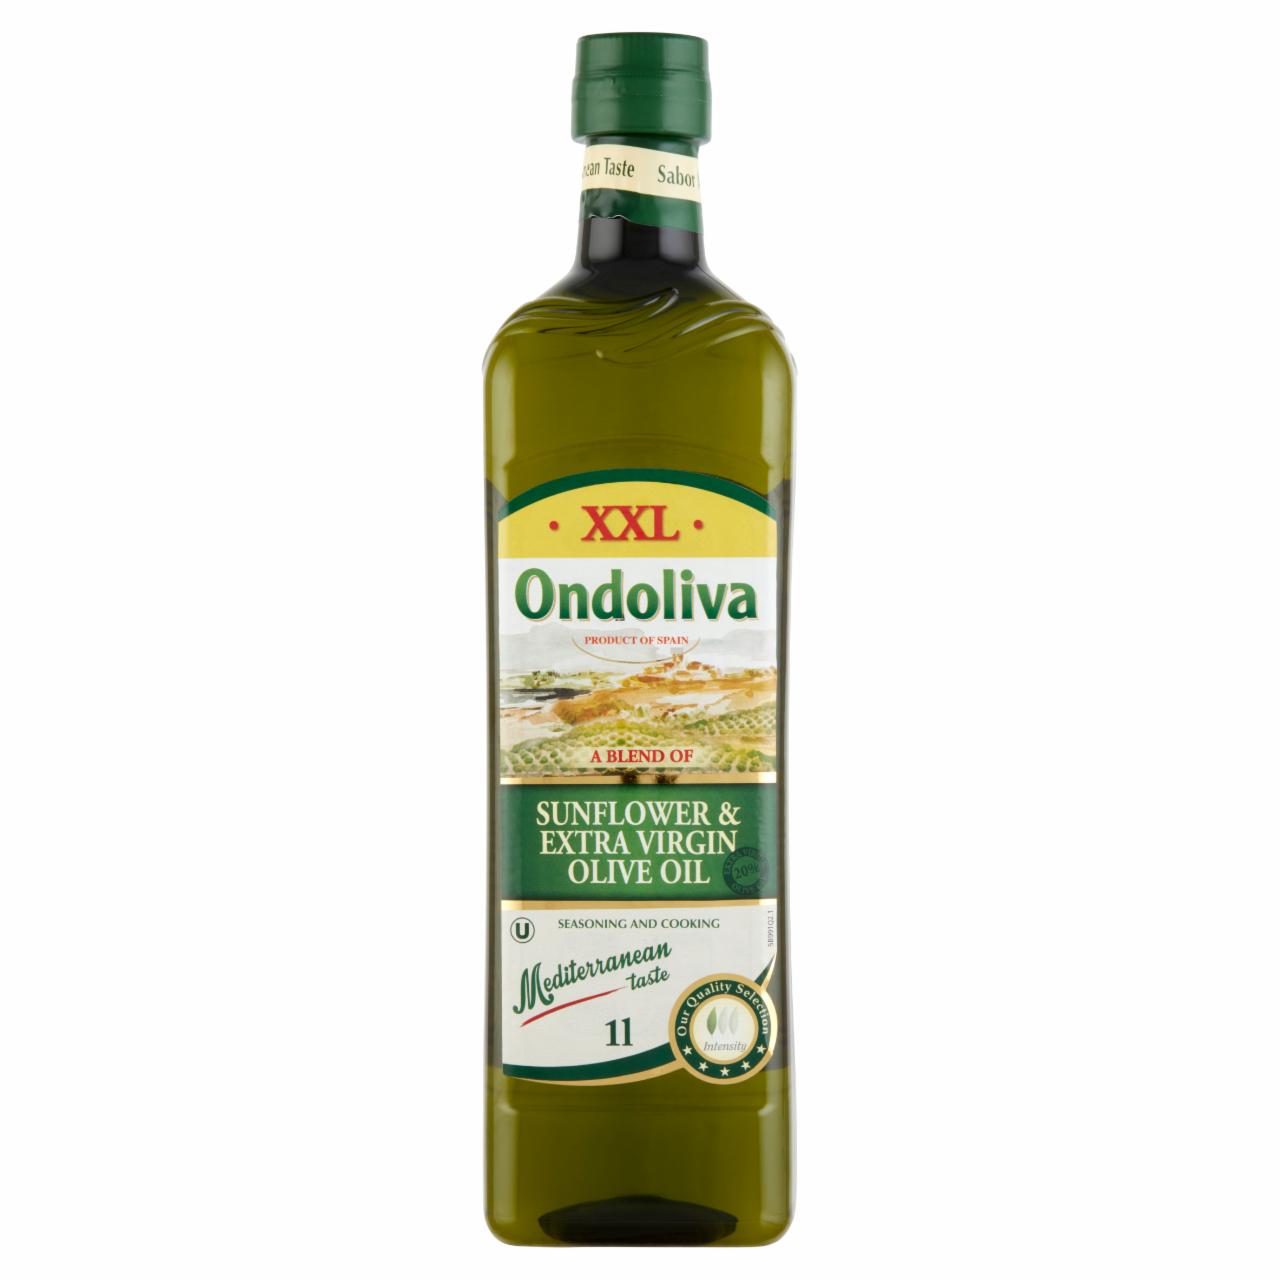 Képek - Ondoliva XXL finomított napraforgóolaj és extraszűz olívaolaj keveréke 1 l